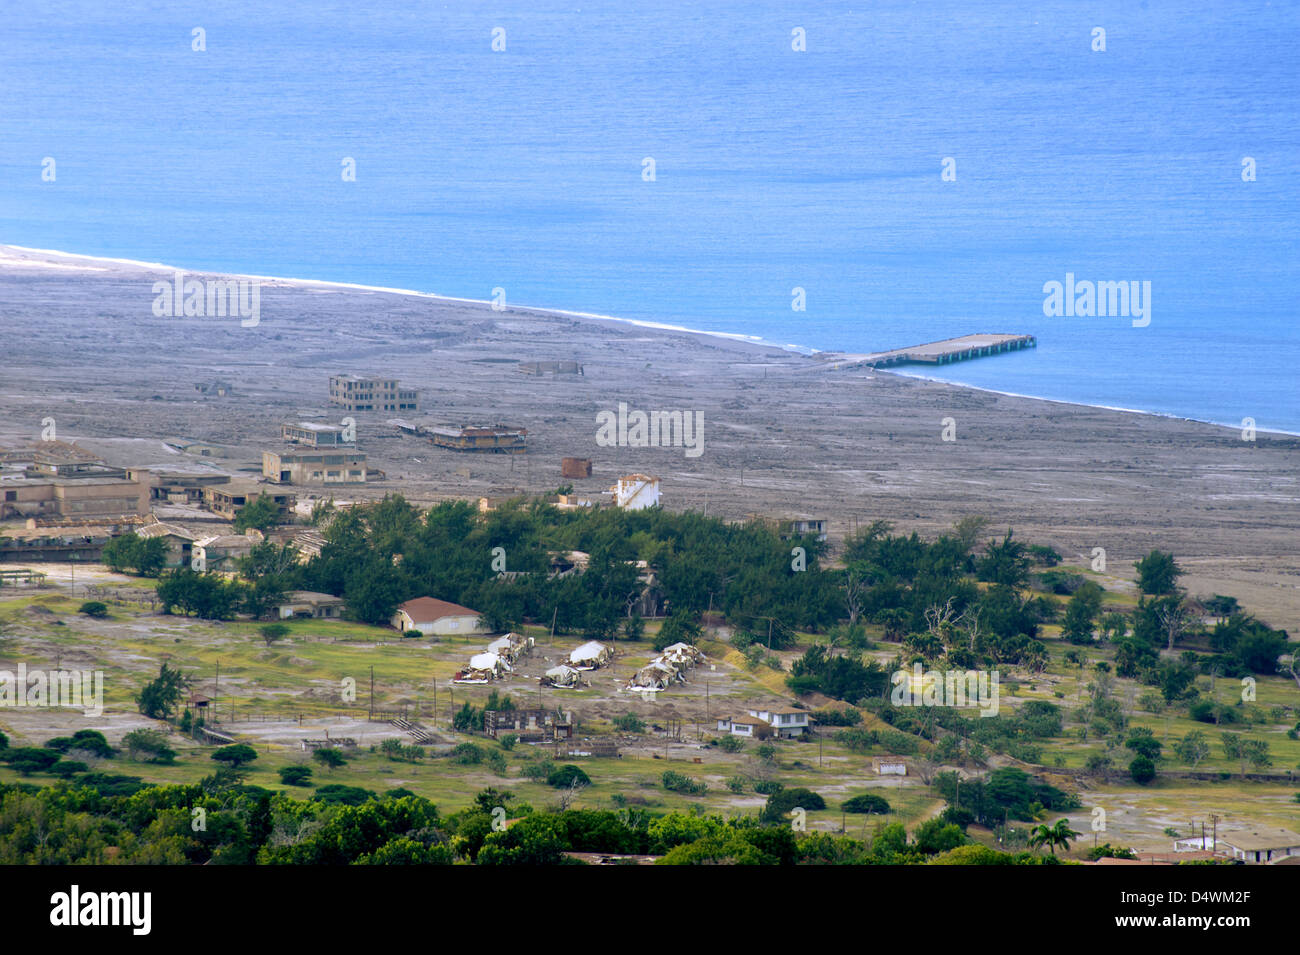 Die Verwüstung von Plymouth und den umliegenden Städten, verursacht durch den Vulkan auf der Insel Montserrat in der Karibik Stockfoto